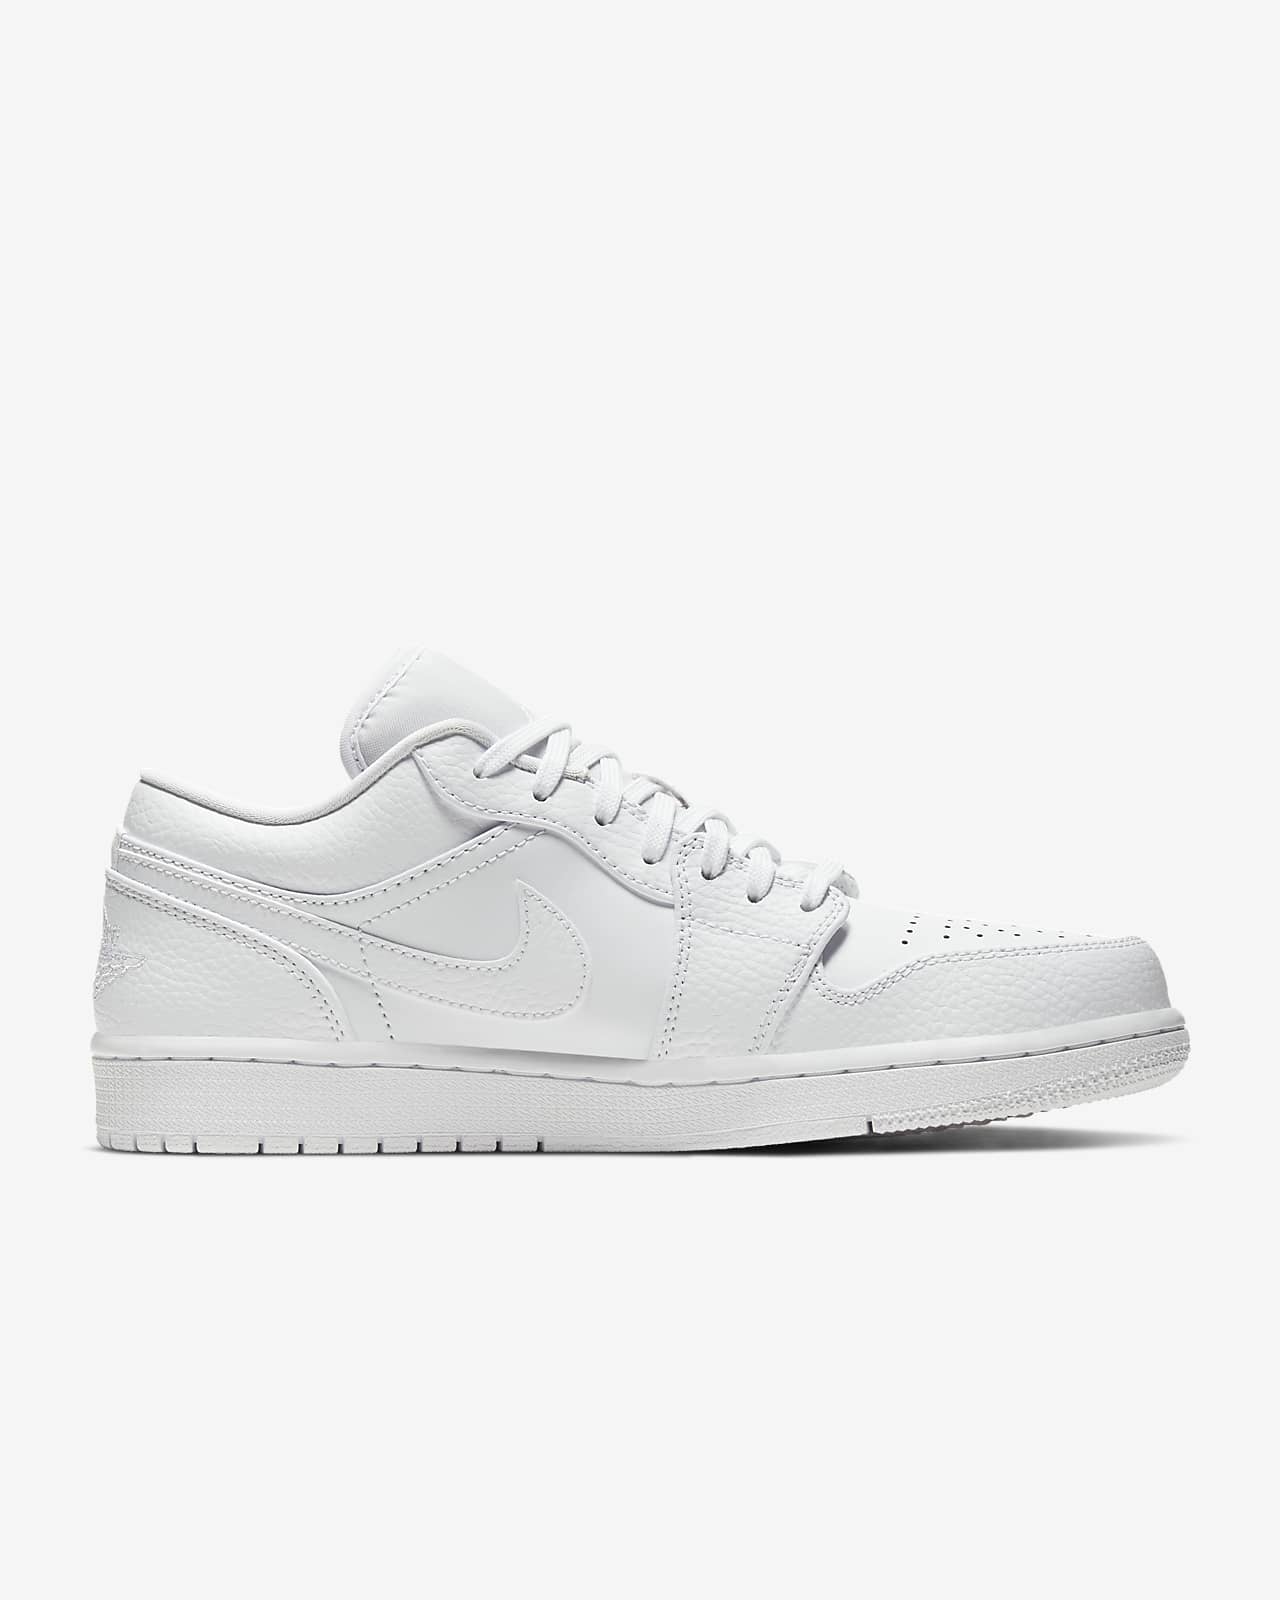 Air Jordan 1 Low Shoe Nike Jp